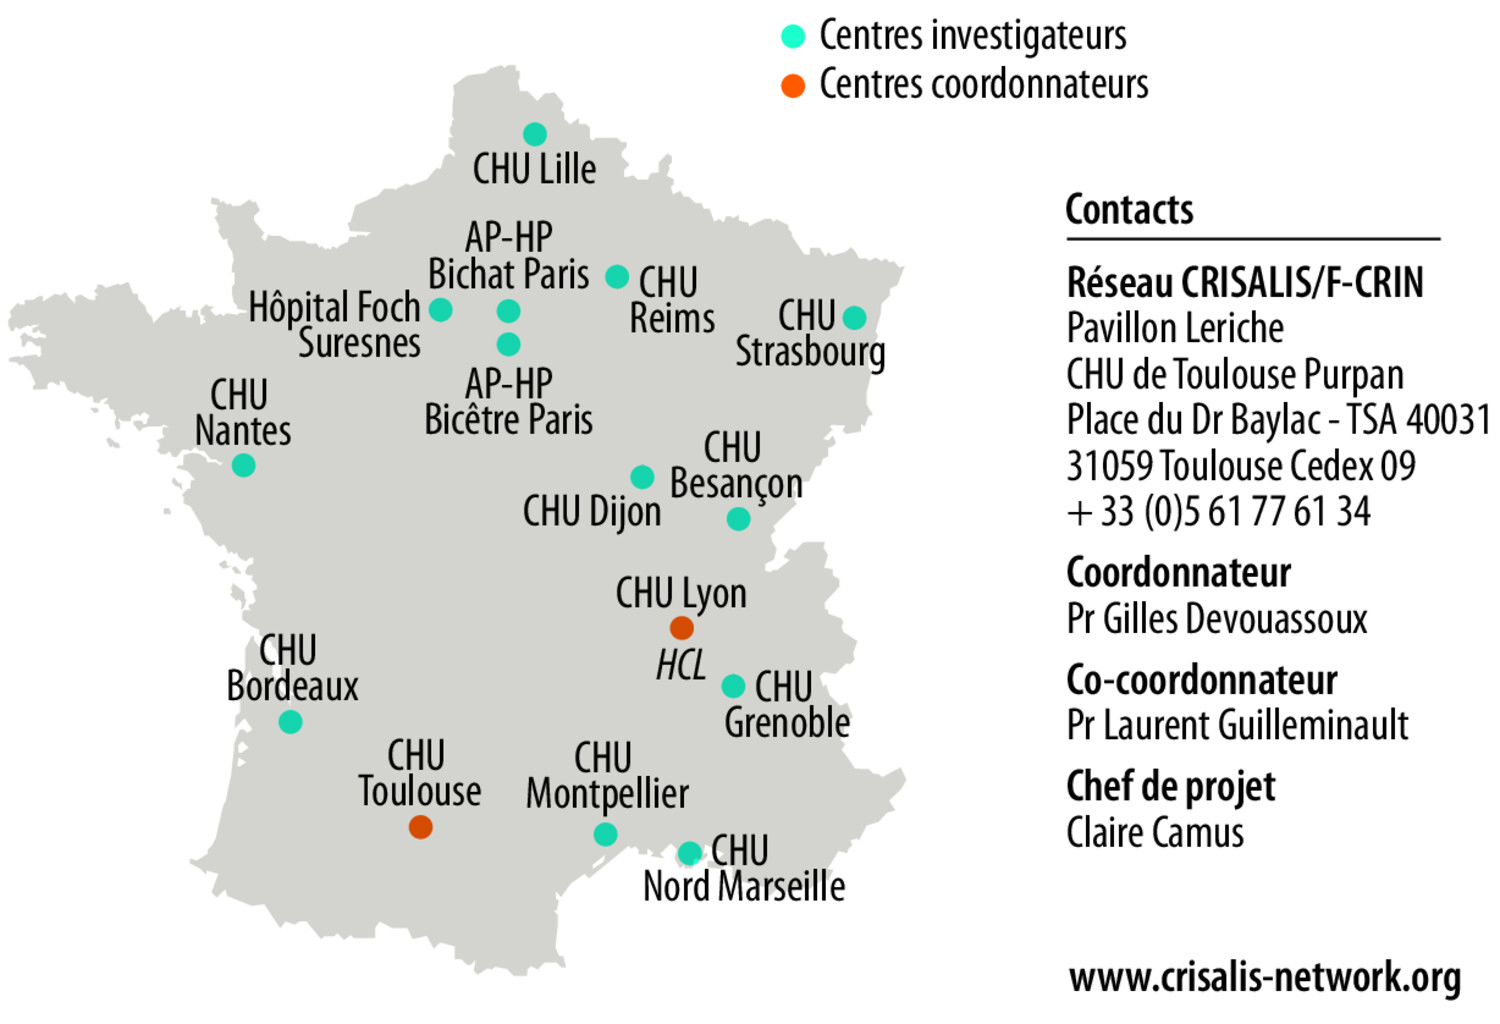 CRISALIS/F-CRIN, le réseau français d’investigation clinique dédié à l’asthme sévère - Figure 1